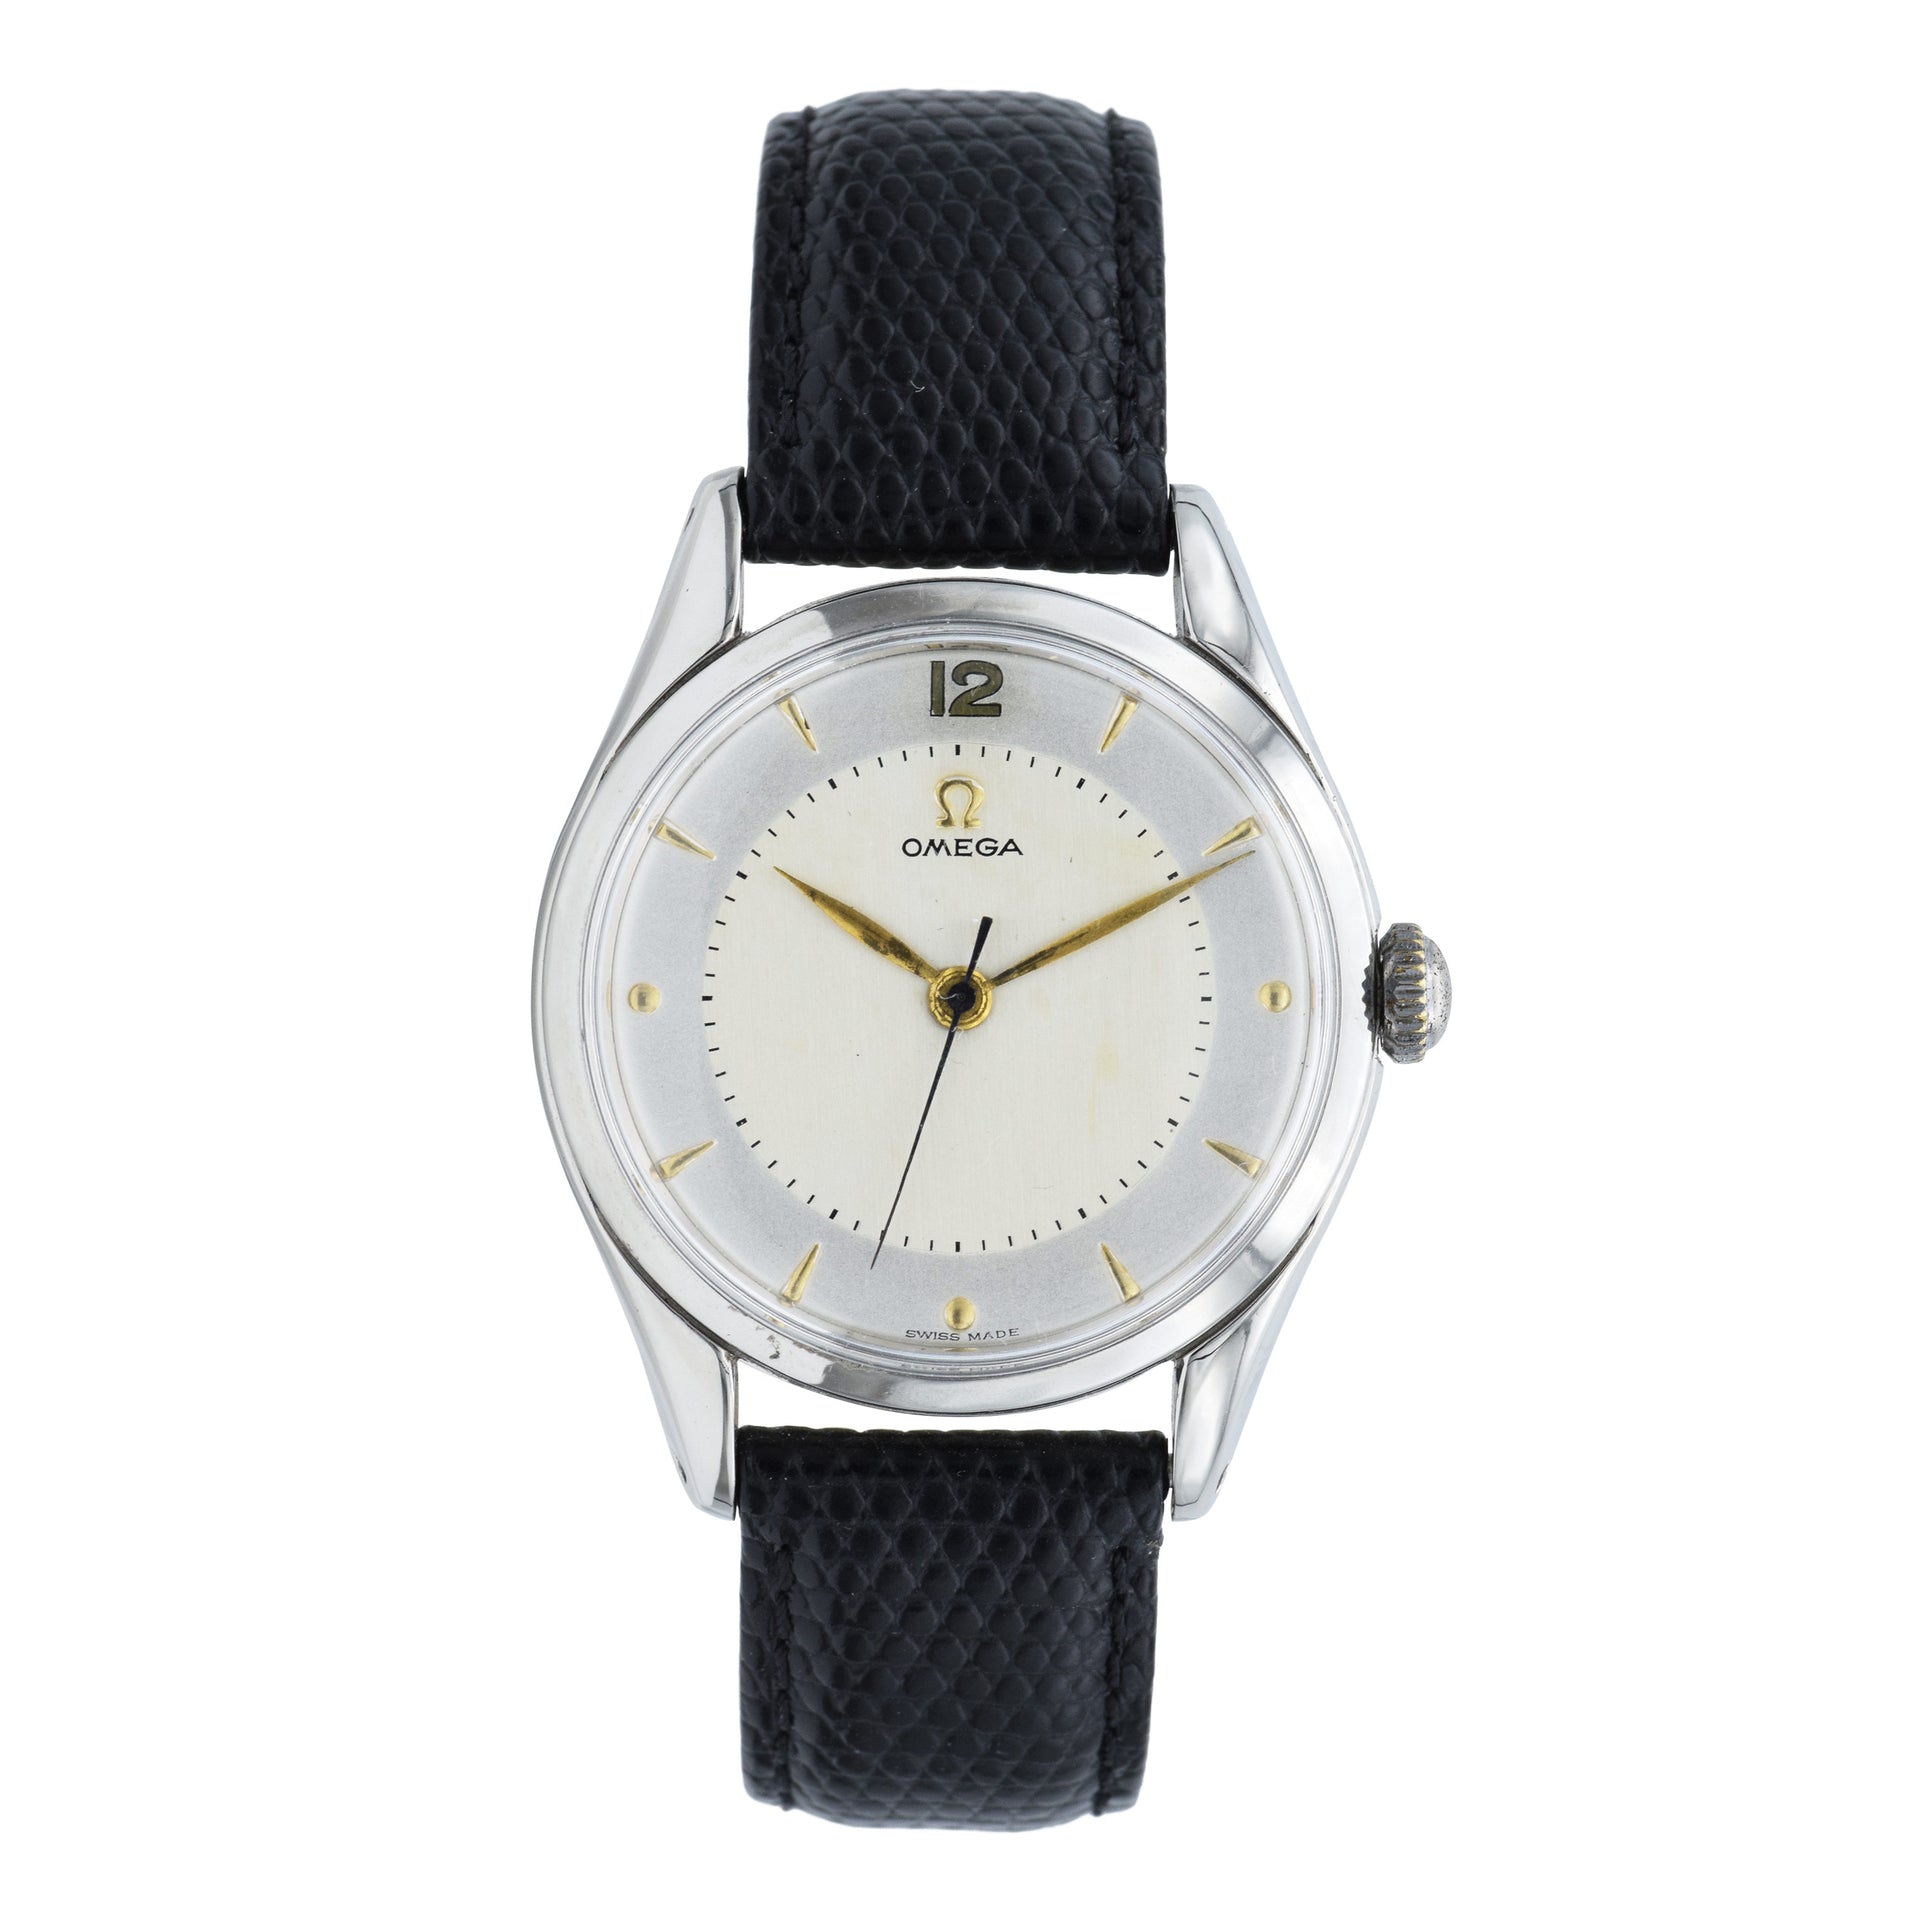 Vintage 1960s Omega Watch